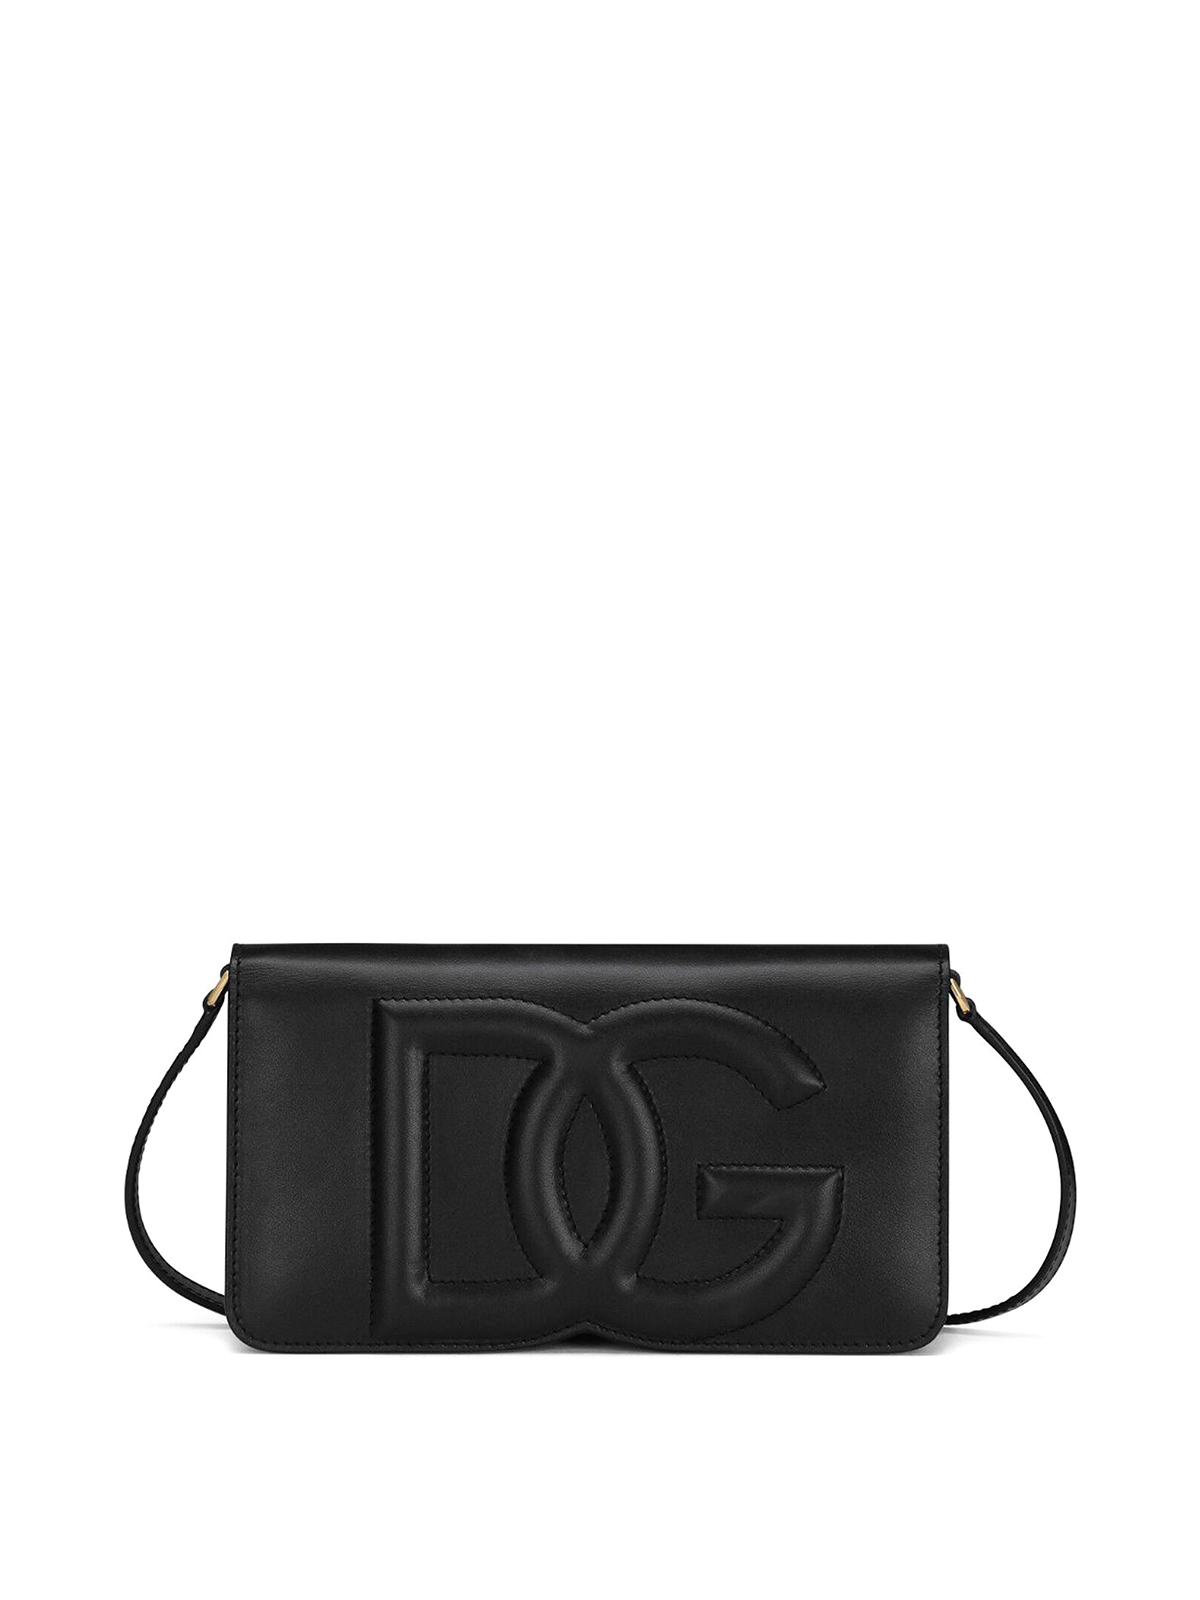 Dolce & Gabbana Leather Shoulder Bag In Black